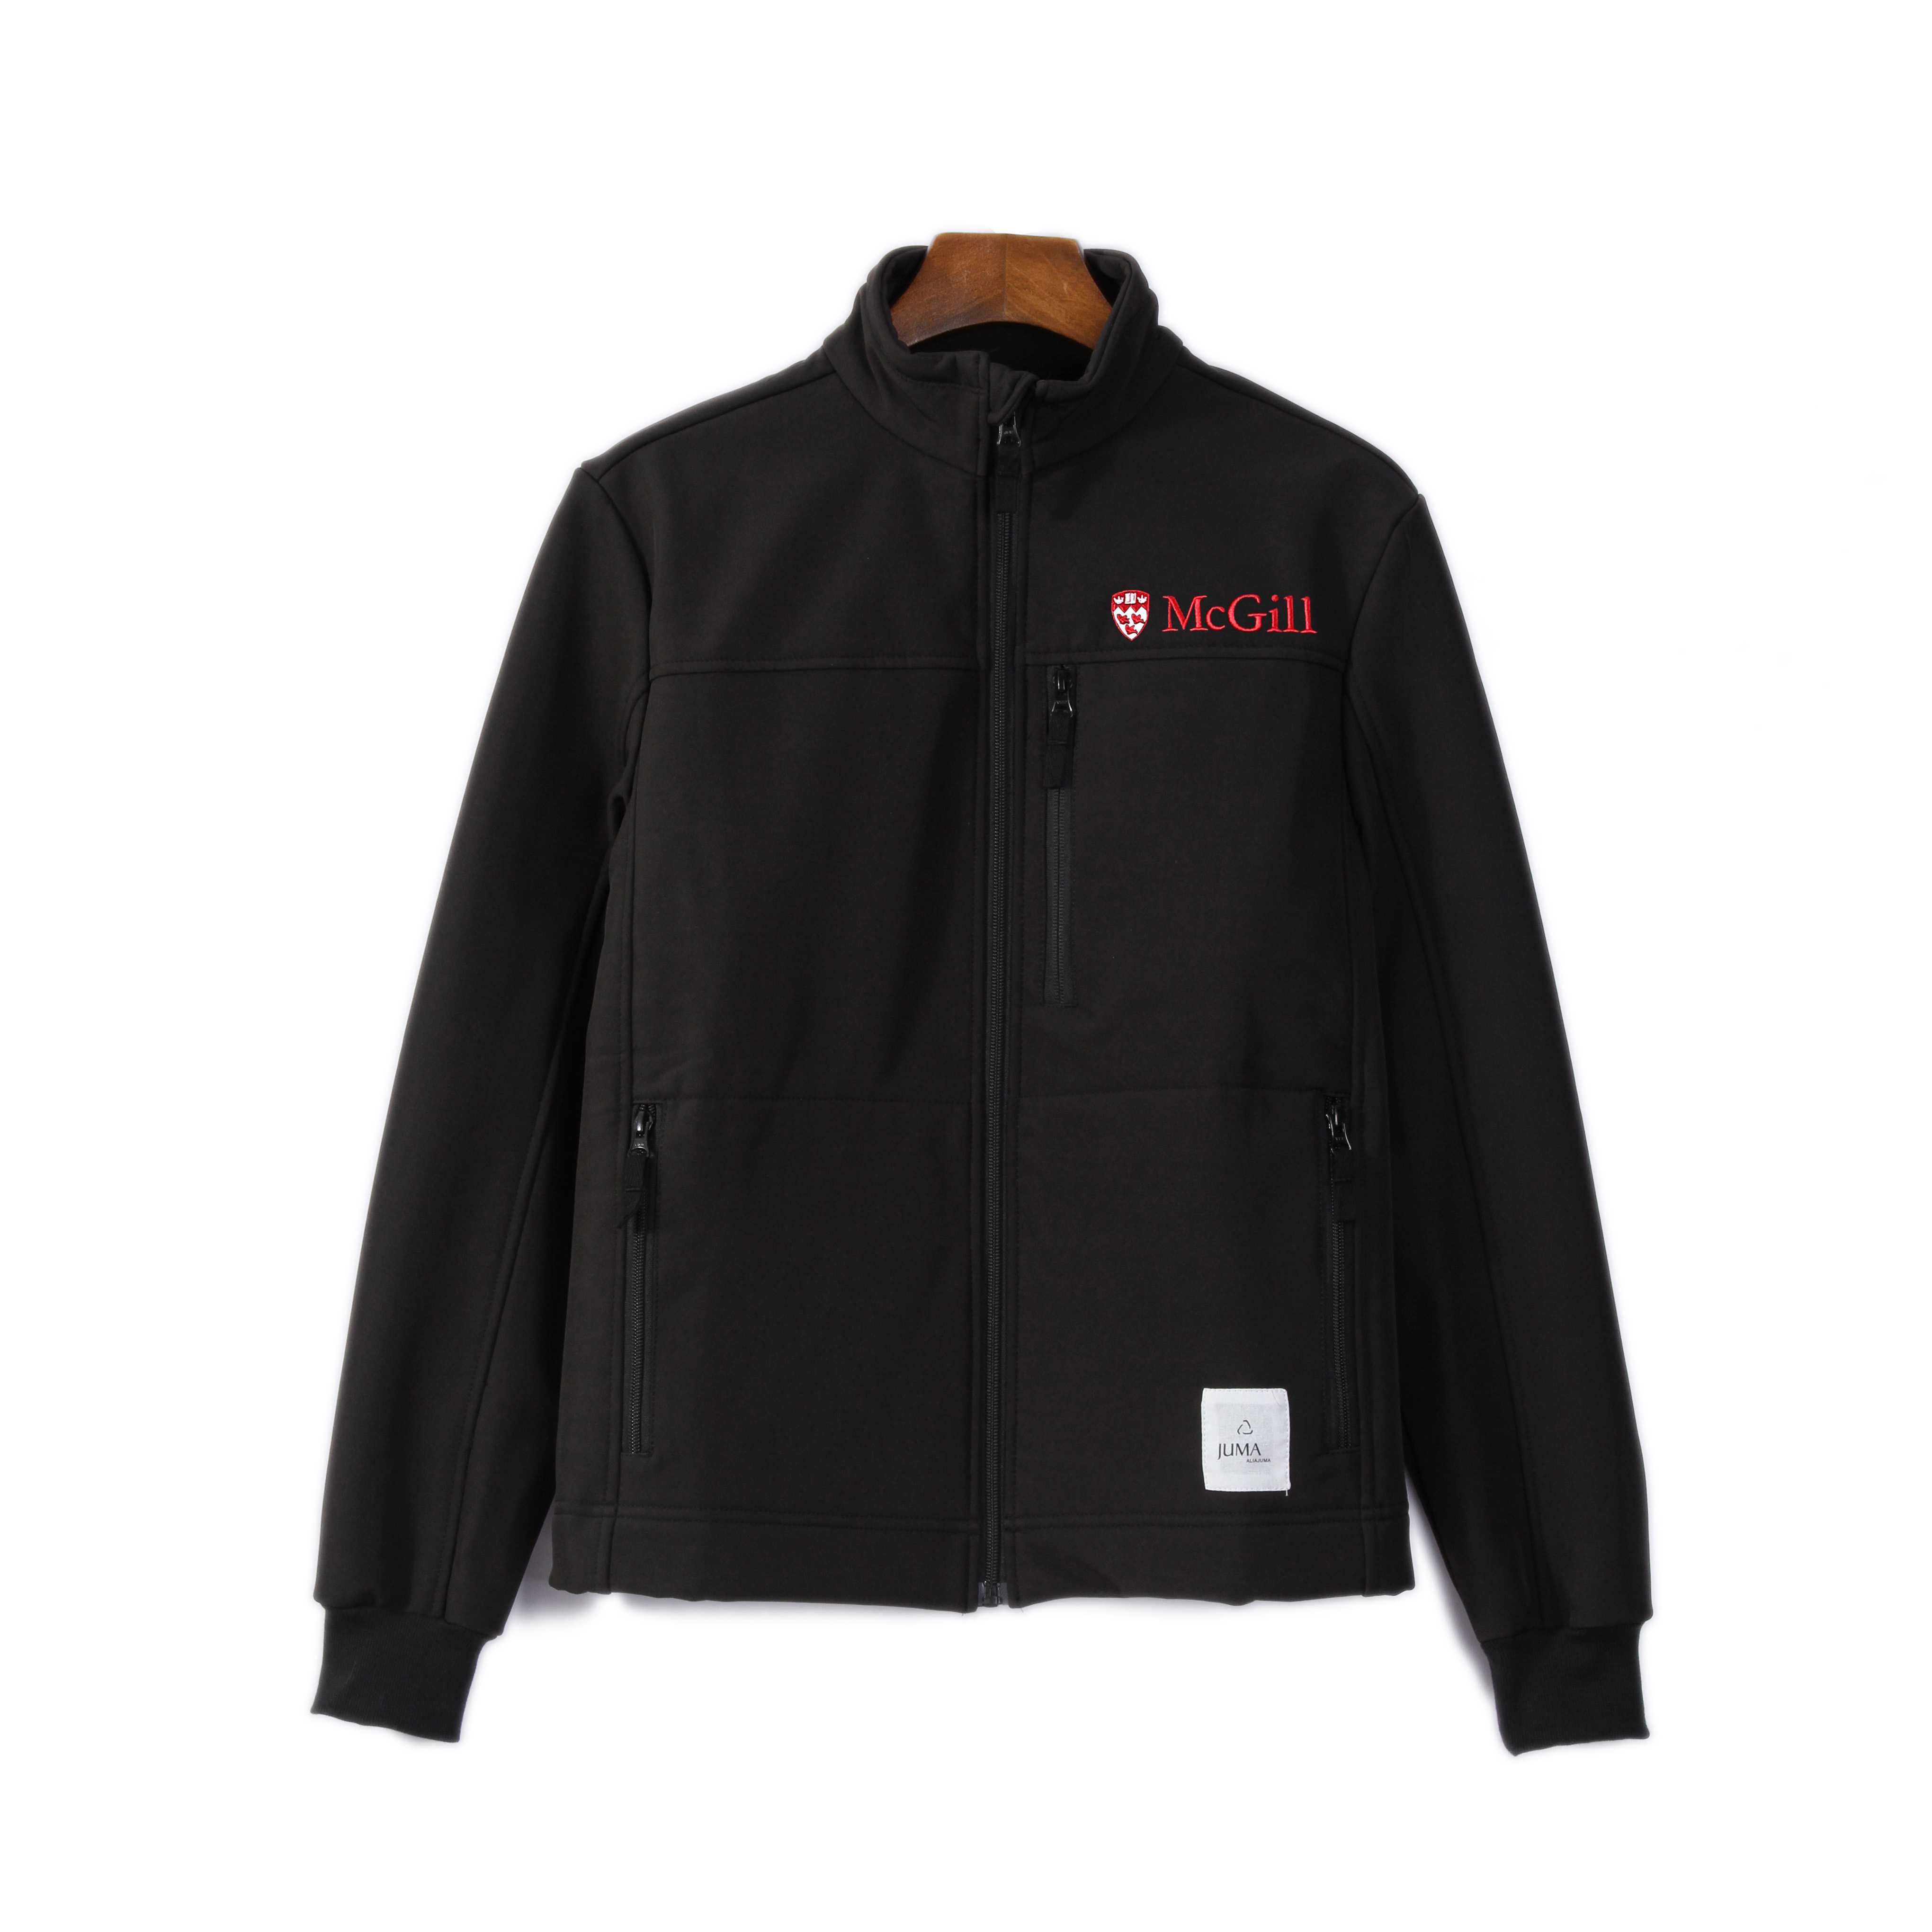 McGill Beijing 户外夹克-22个回收水瓶-黑色 | McGill Beijing Soft Shell Jacket- 22 Recycled Water Bottled - Black